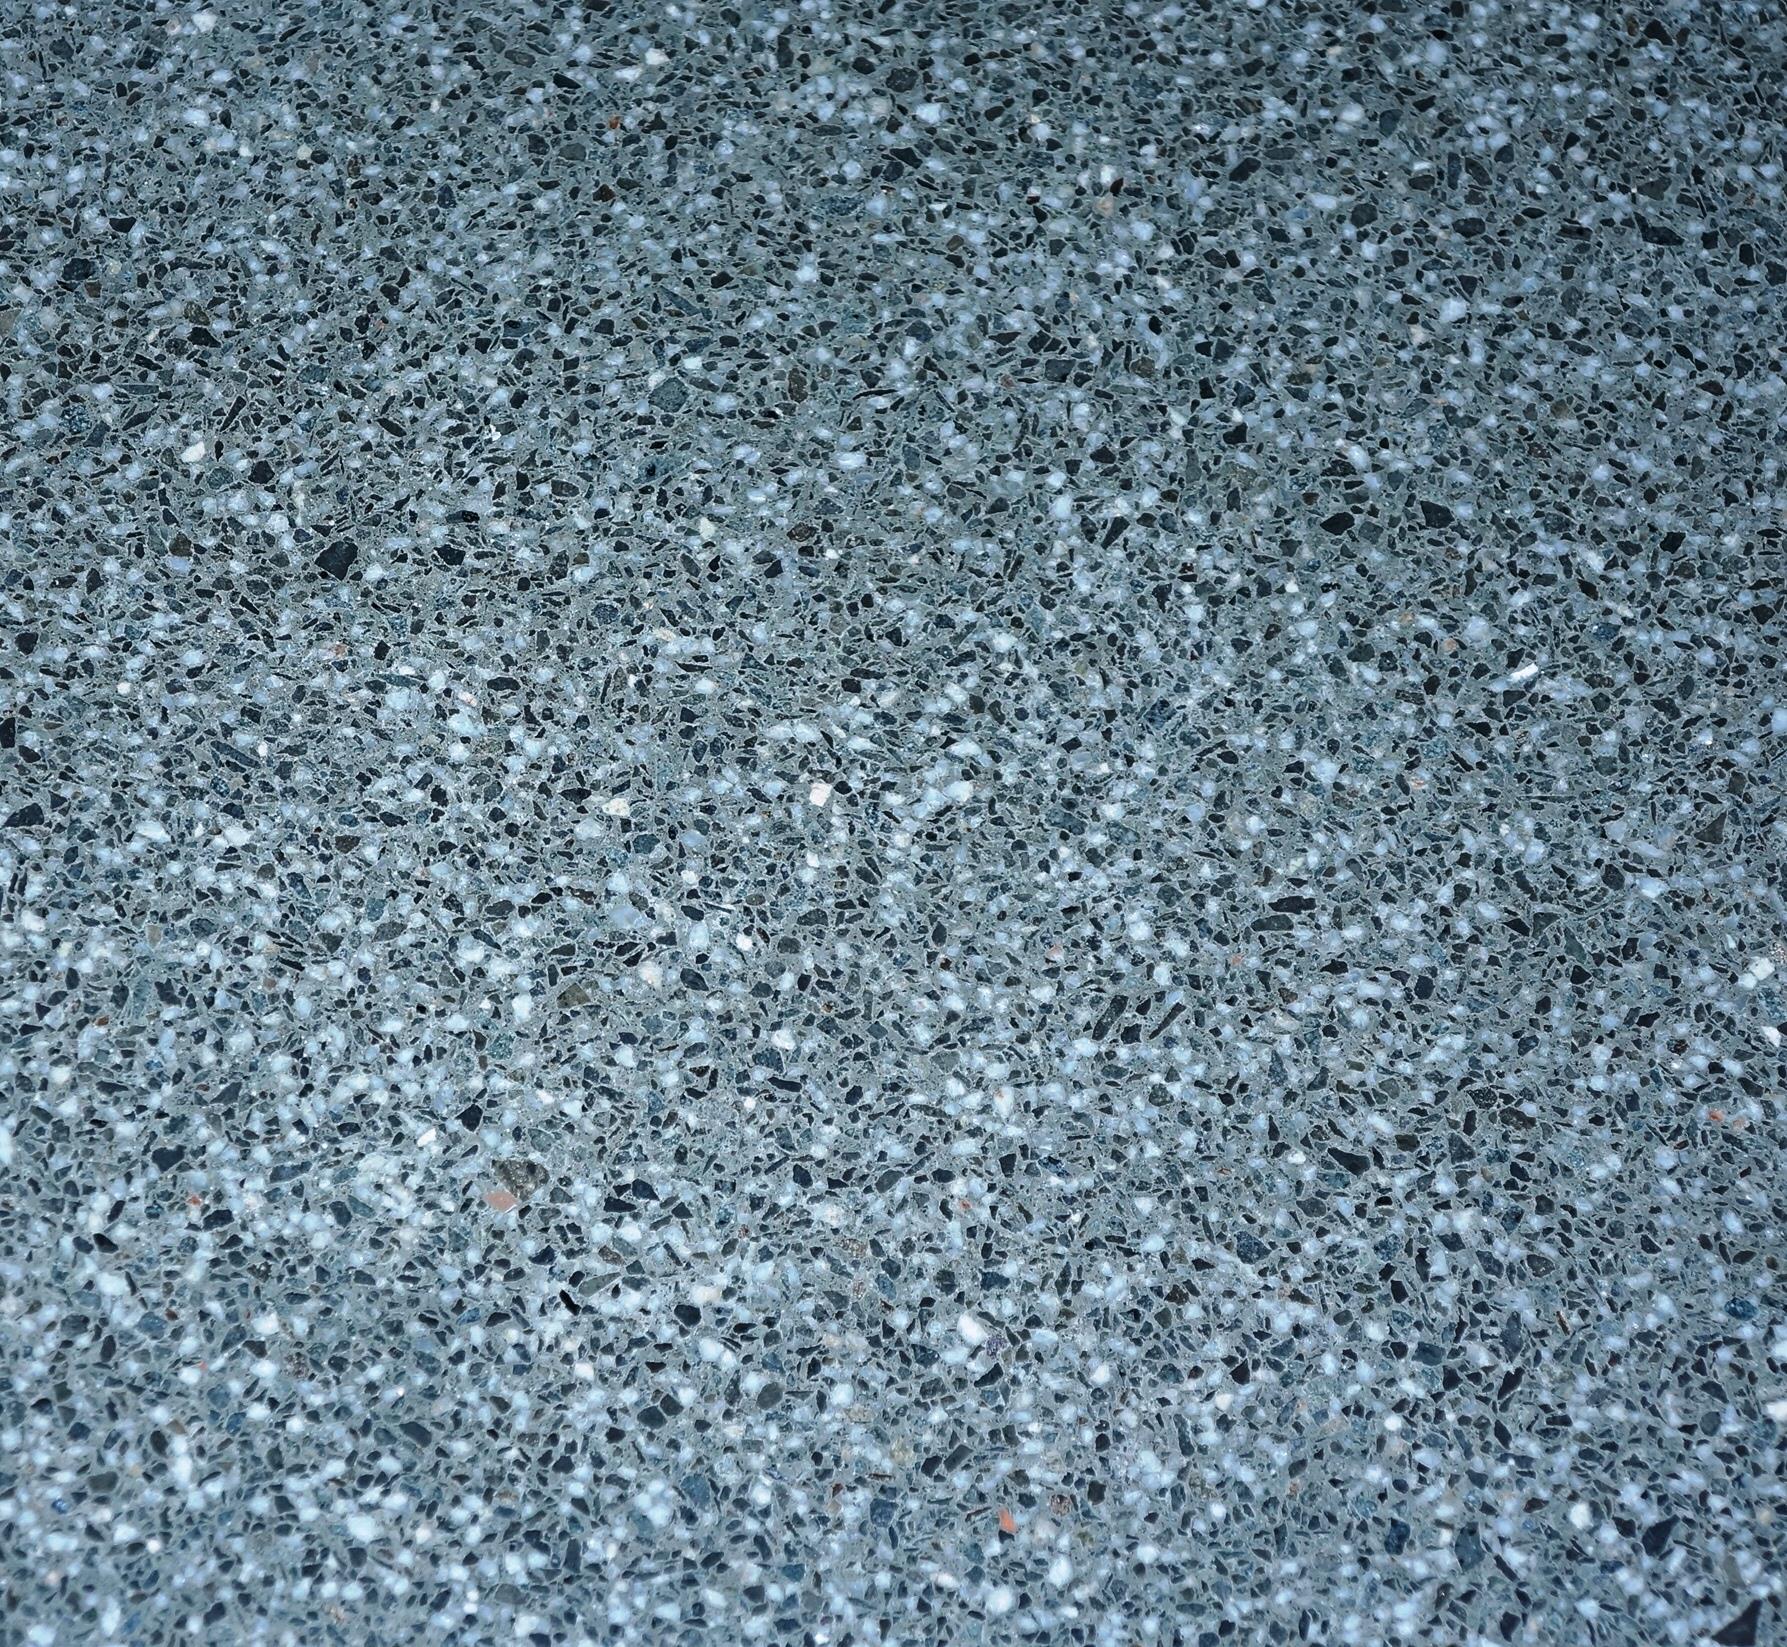  Jual  Lantai Batu Keramik  Quartz dark grey 60  x  60  Harga  